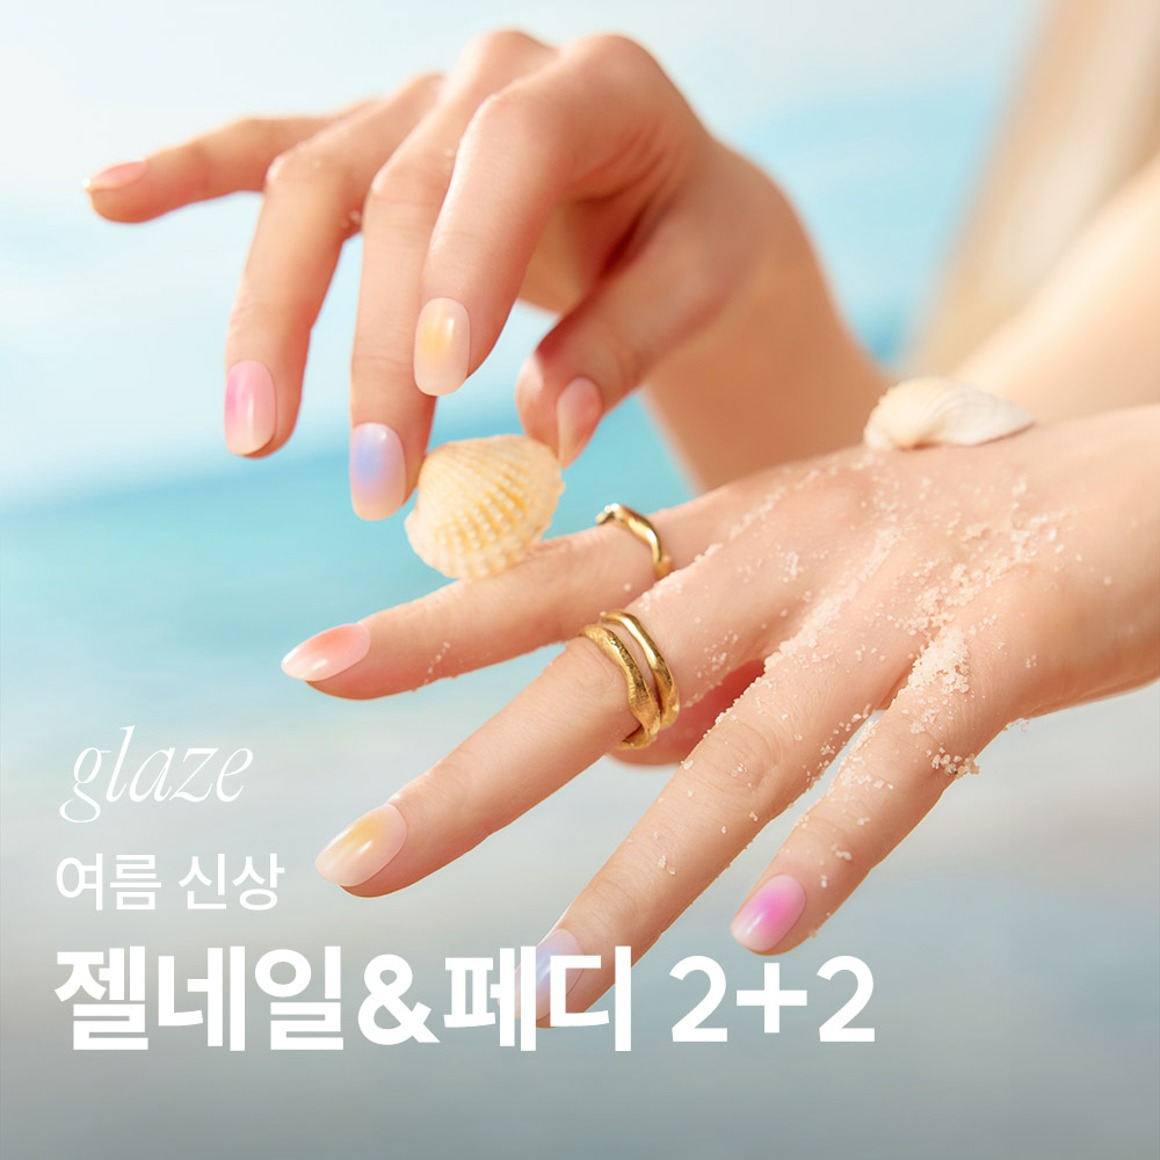 글레이즈 - [2+2]  여름신상 젤네일&amp;페디 SET